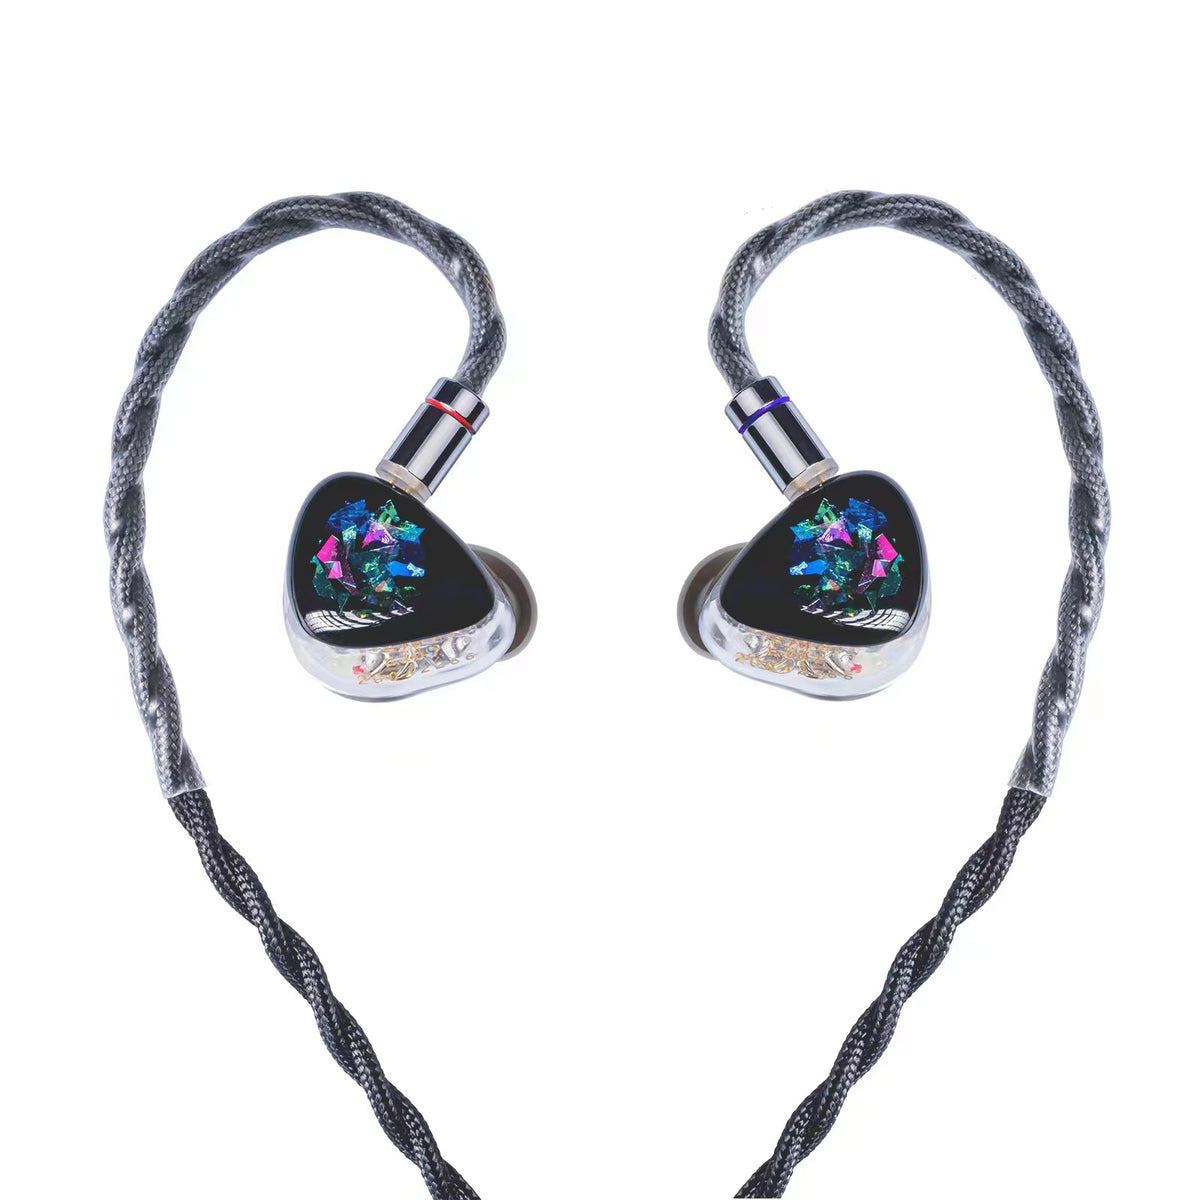 Custom In-Ear Monitors & Earphones